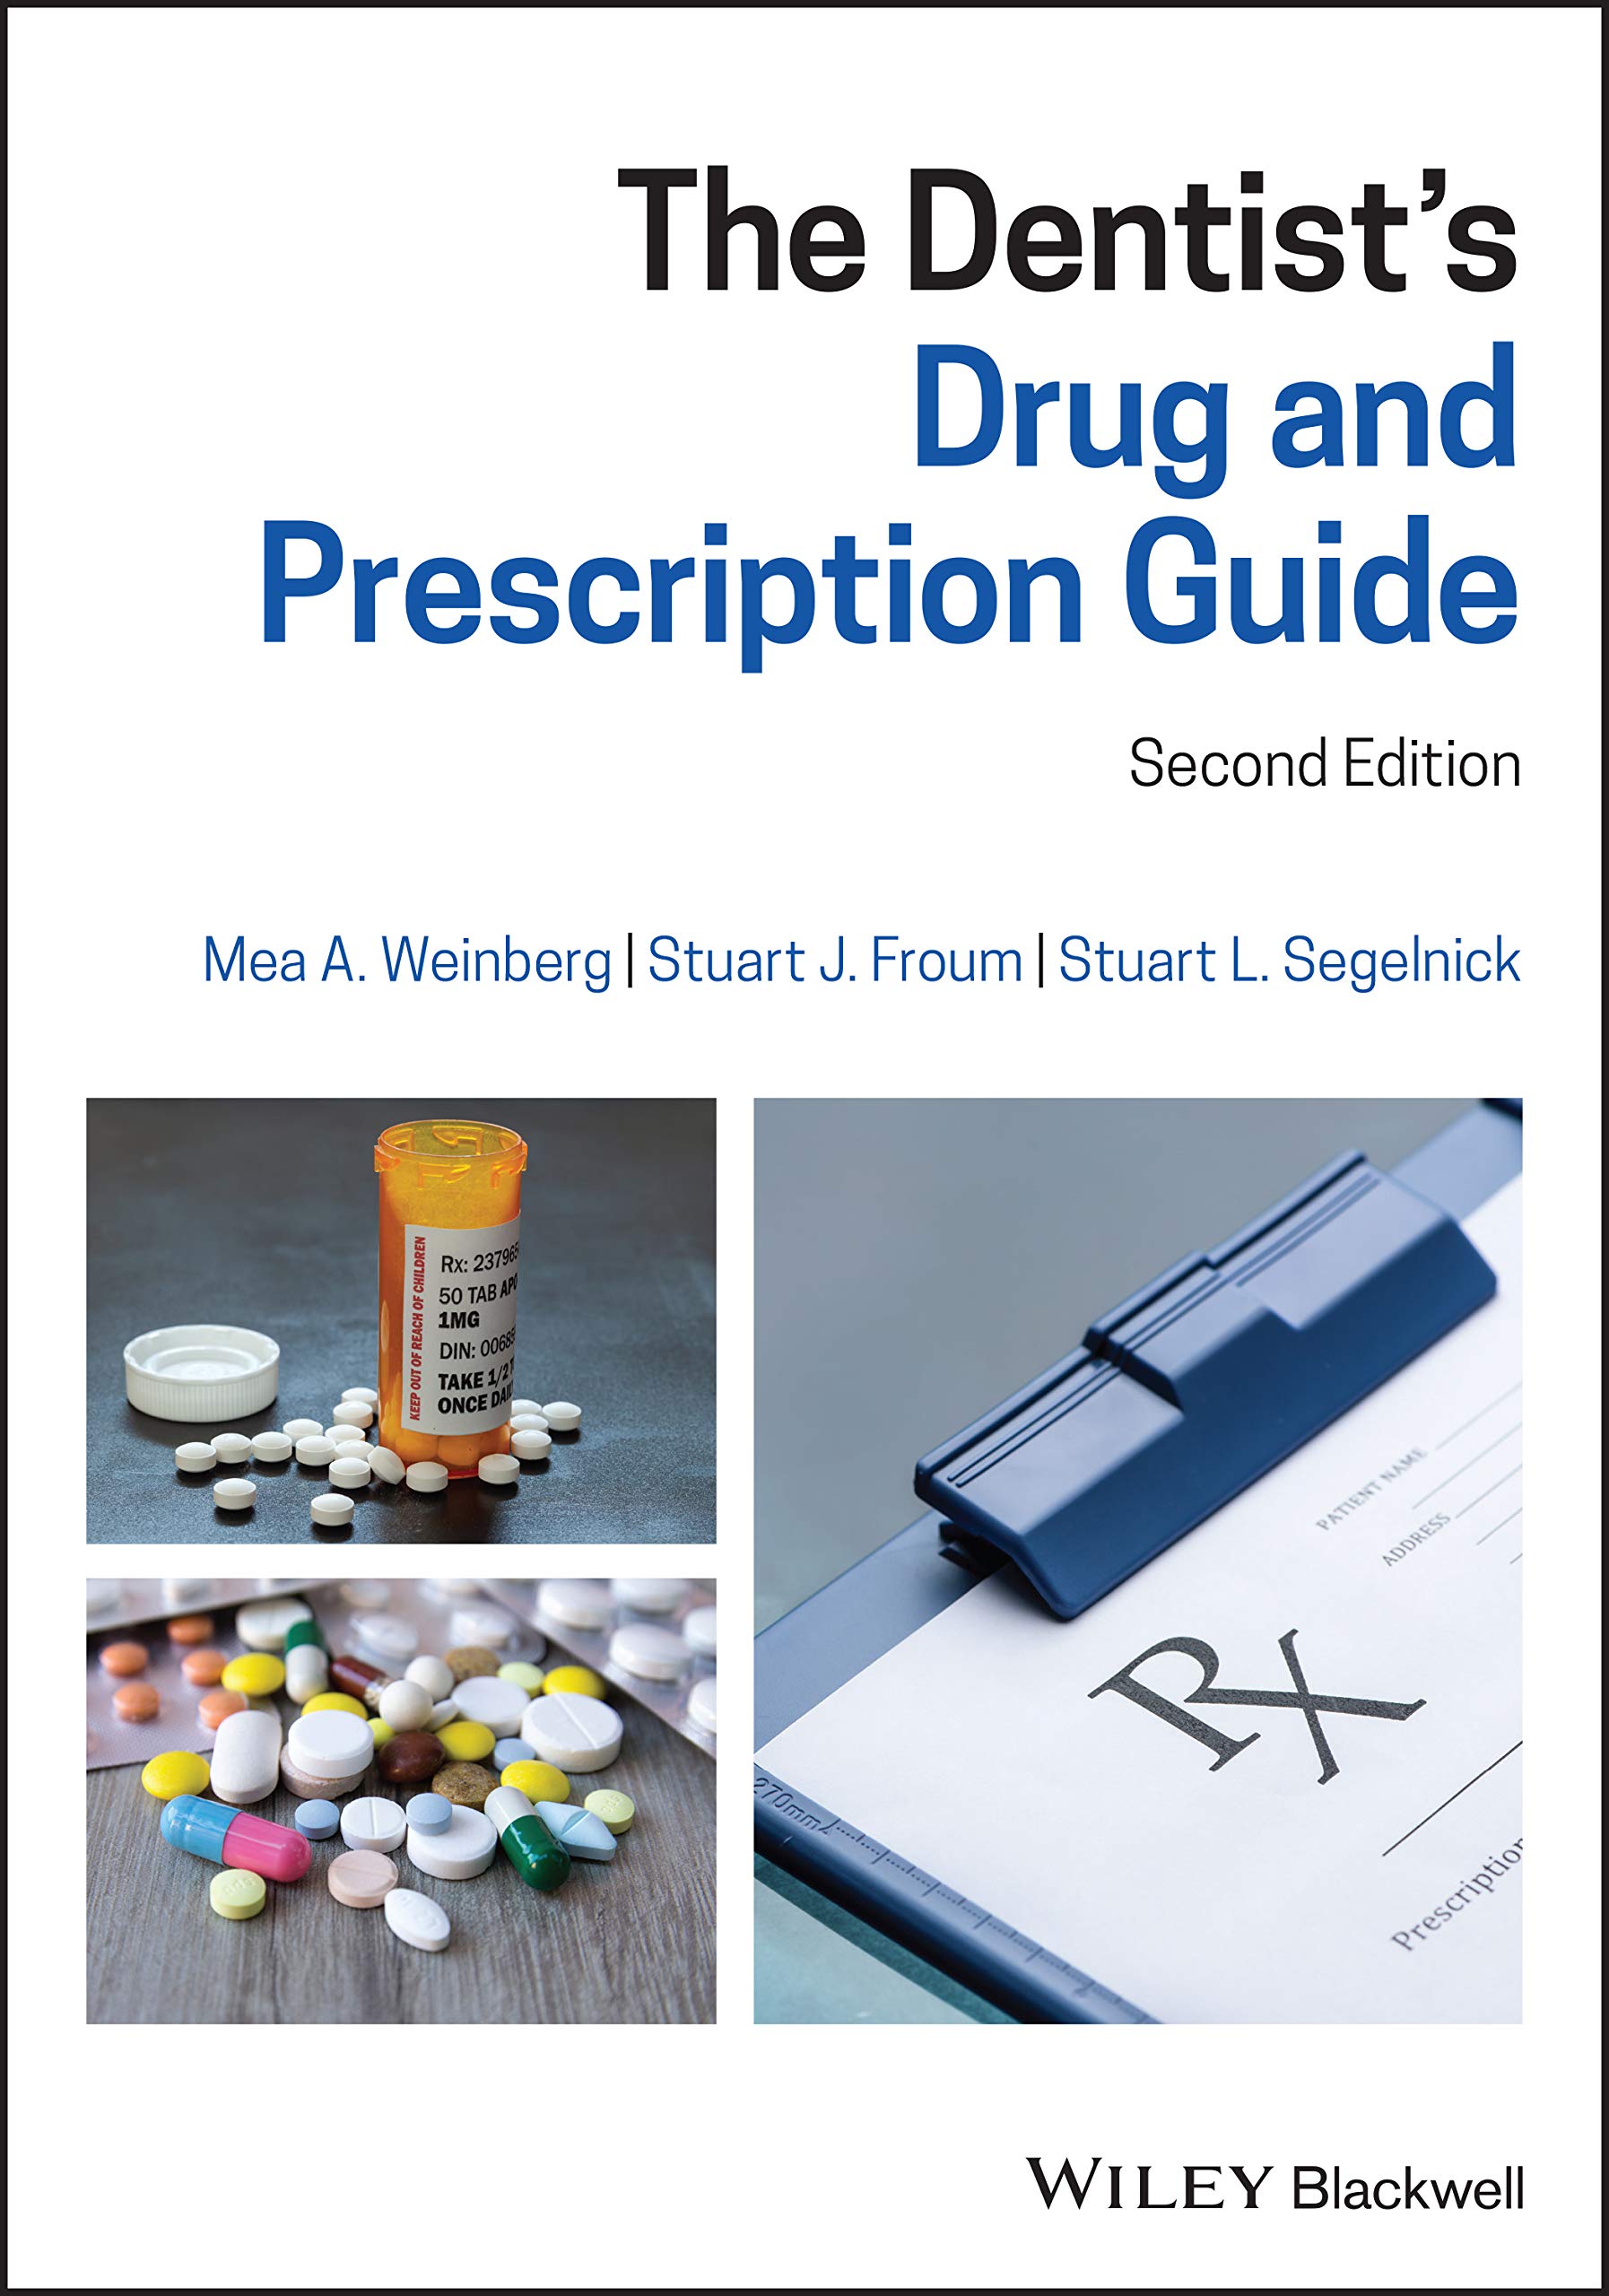 The Dentist's Drug and Prescription Guide Ed 2 (2020) ebooksz